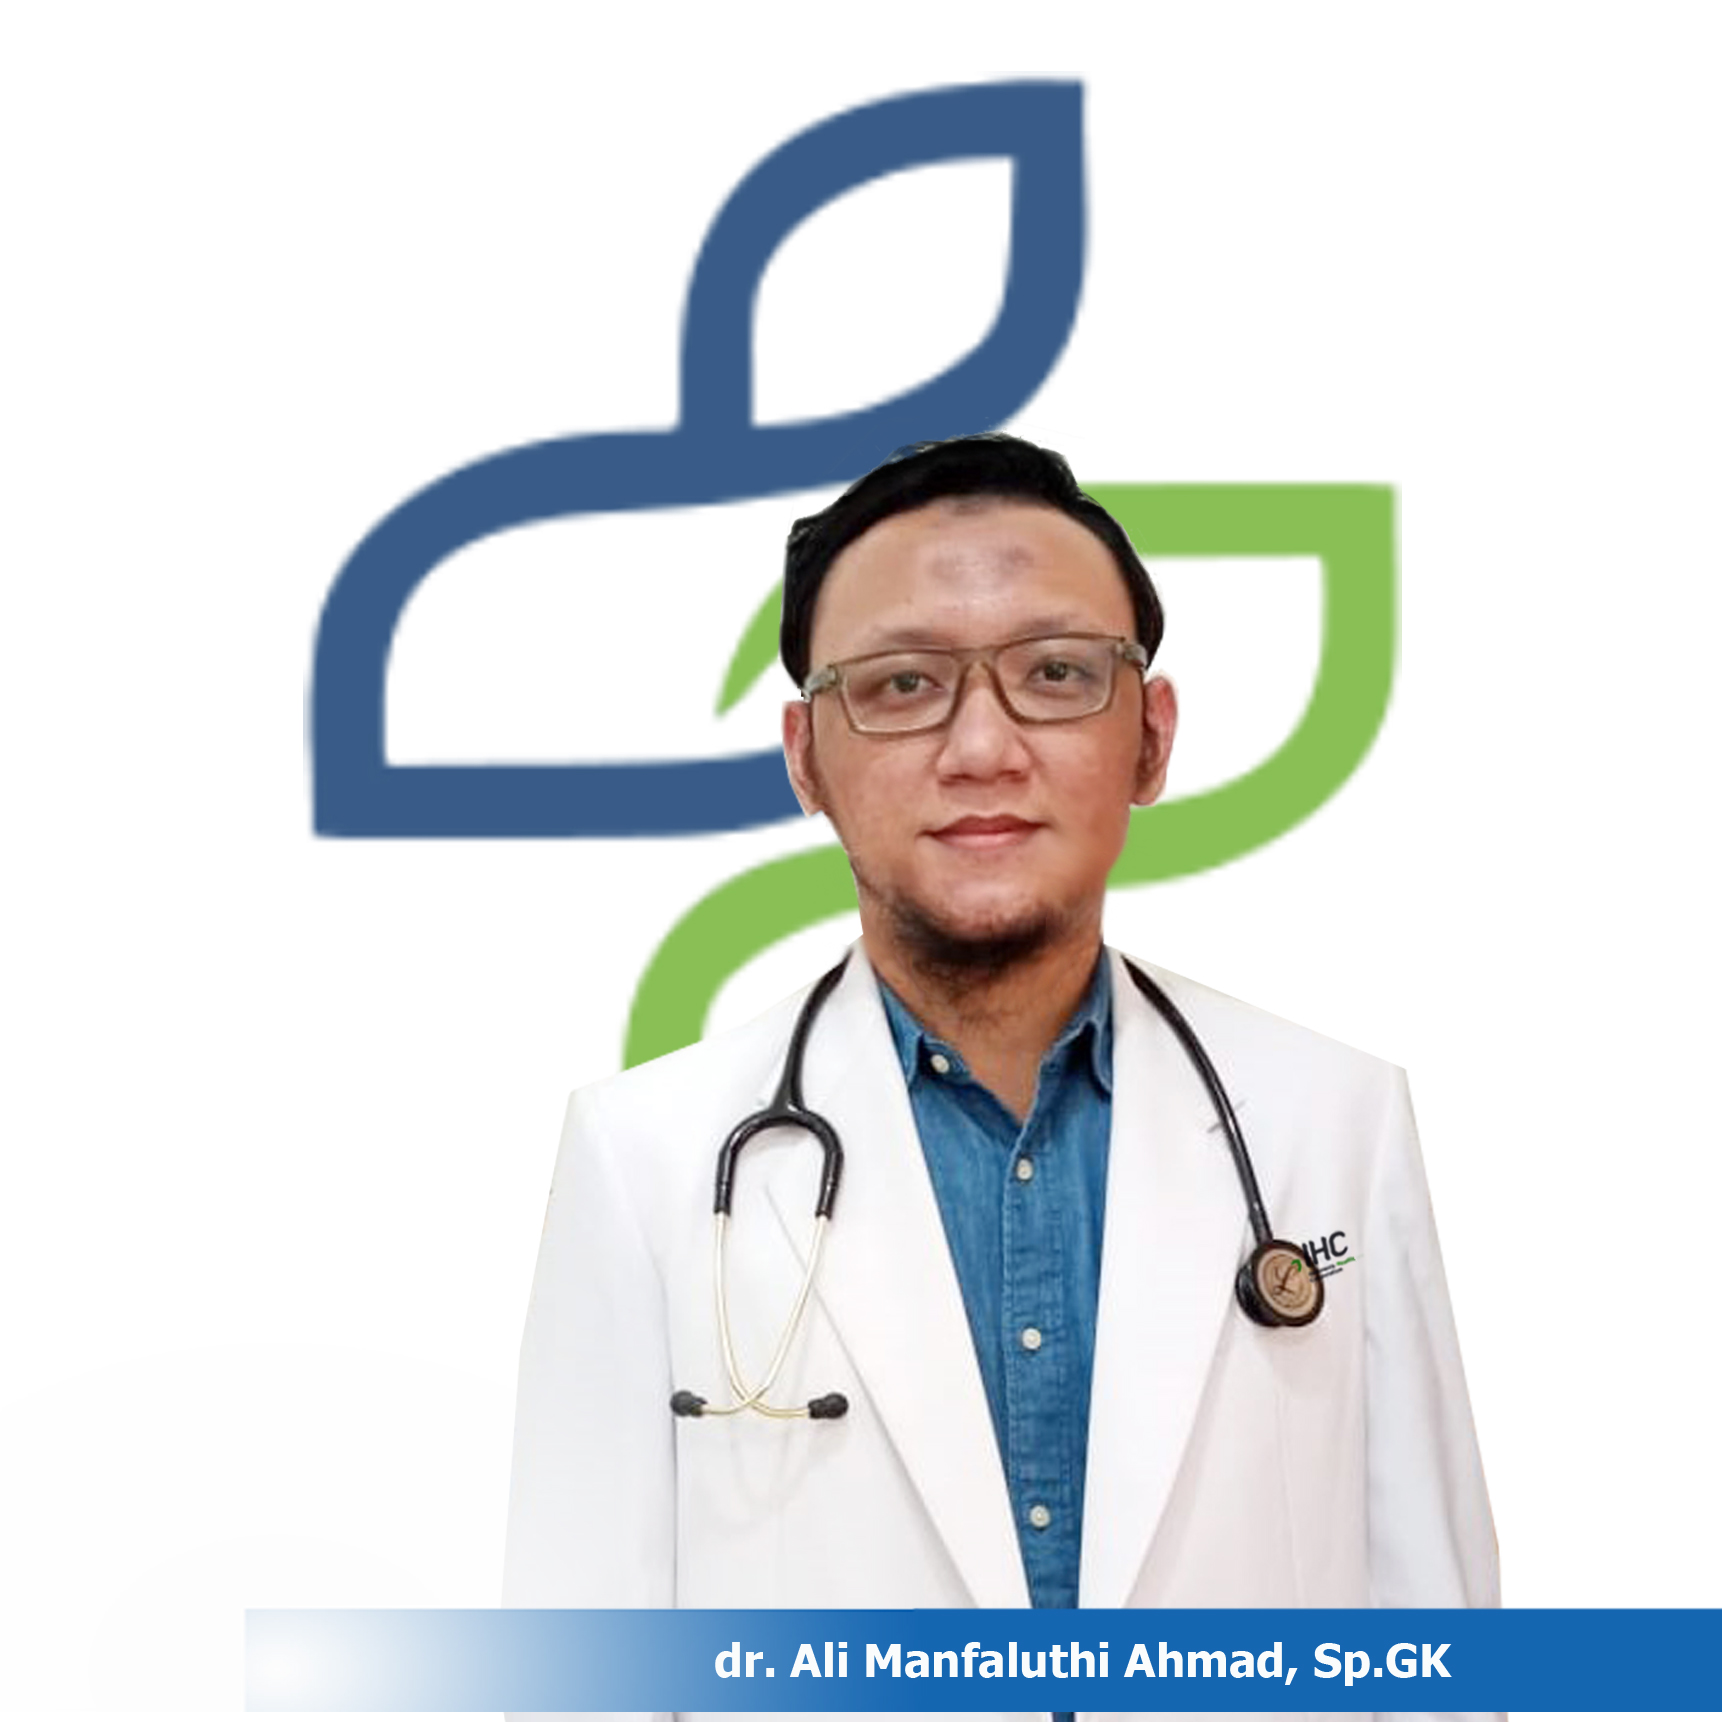 dr. Ali Manfaluthi Ahmad, Sp.GK